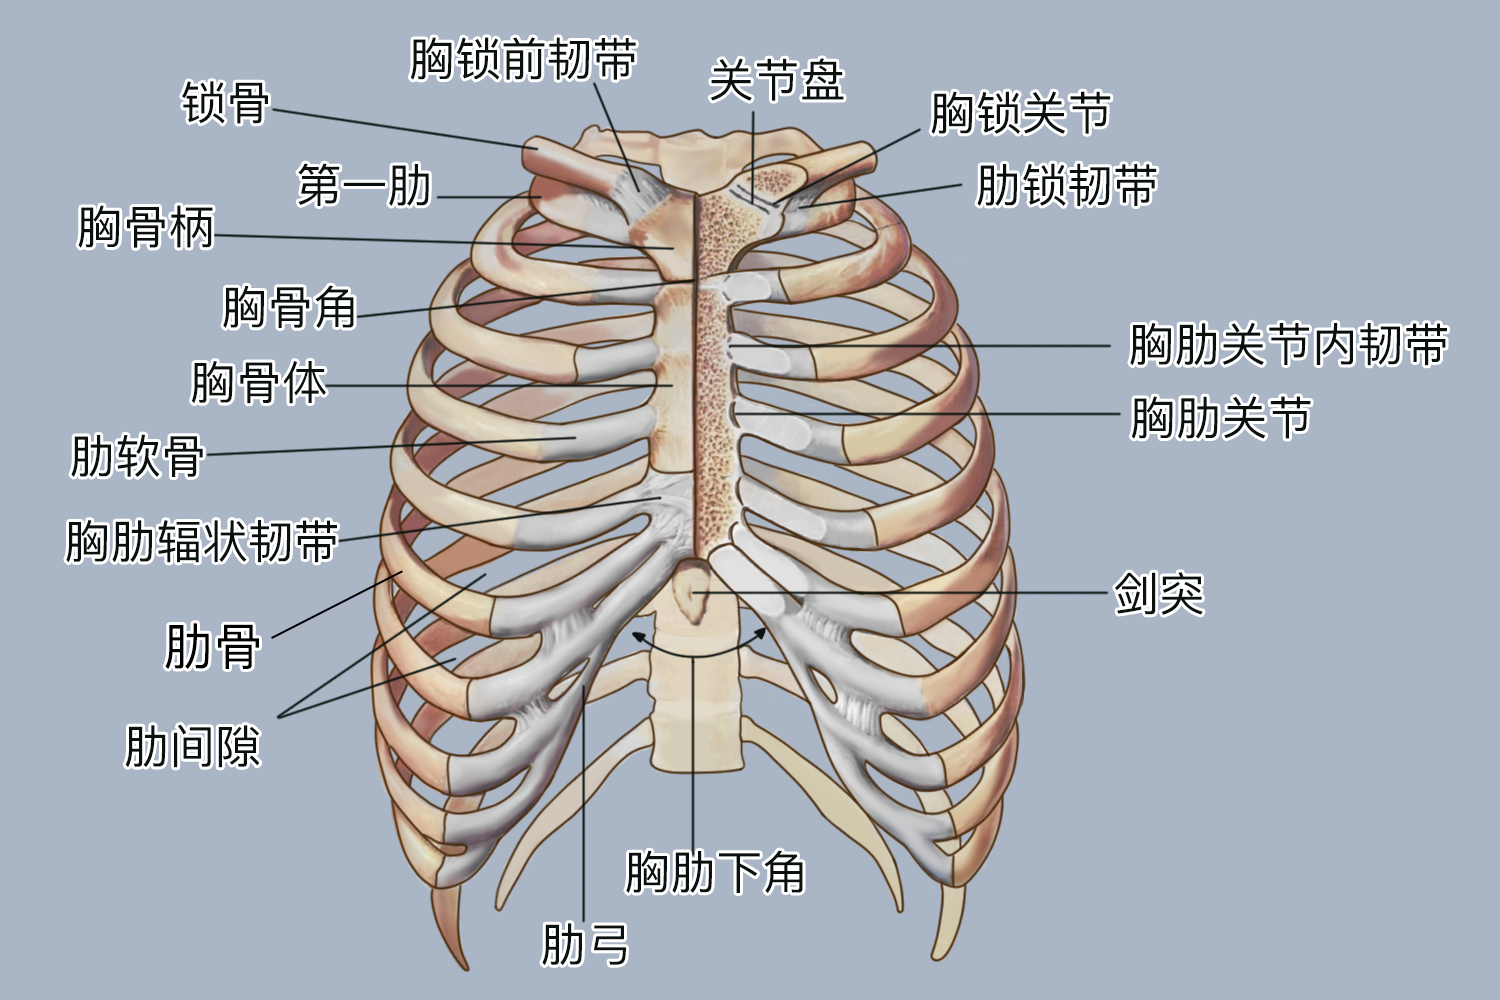 前为胸骨,后为胸椎,两侧为肋骨,形成一个横径大于前后径的肾形骨架